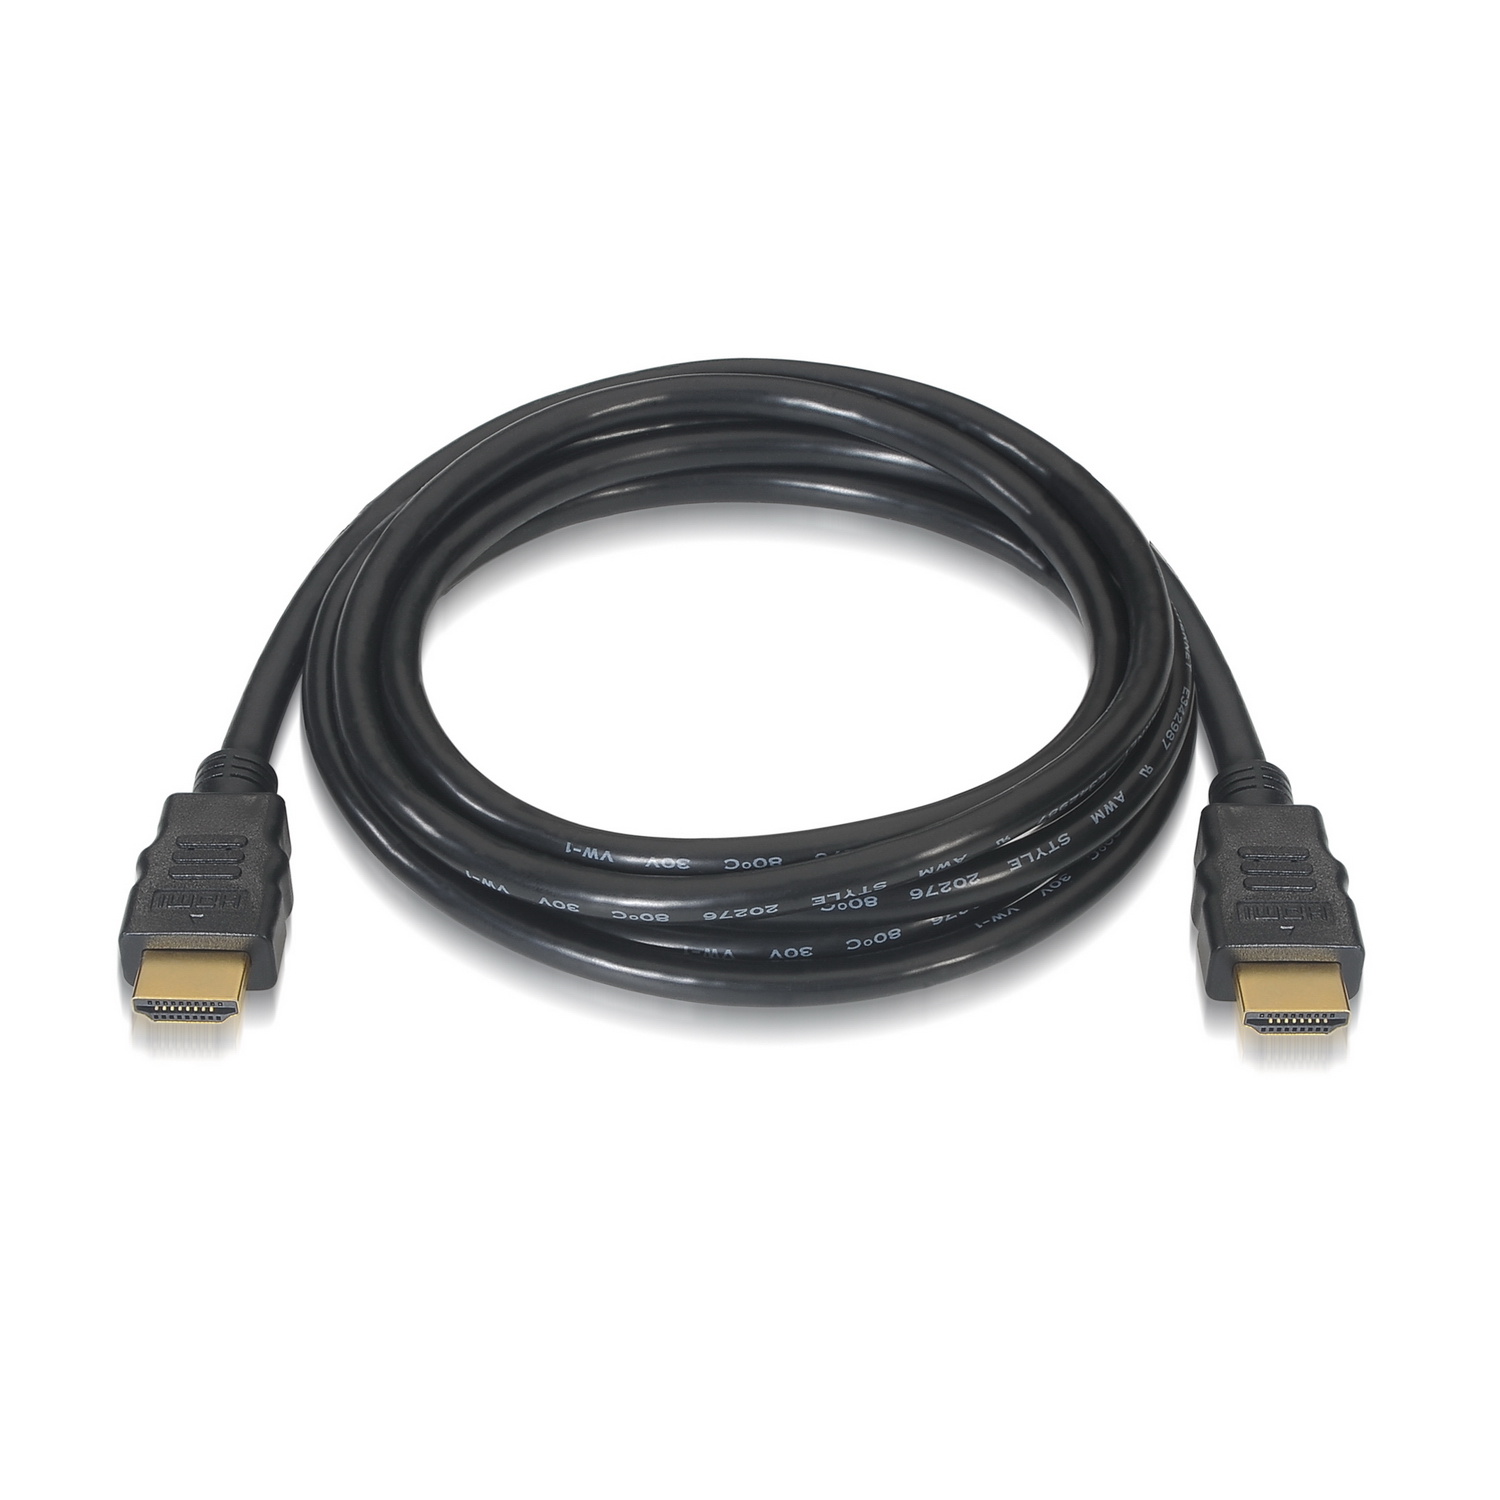 Aisens Câble HDMI 2.0 Certifié 4K HDR 60Hz Premium Mâle vers Mâle - Ultra HD 3D ARC - 4K - 3.0m - Couleur Noir